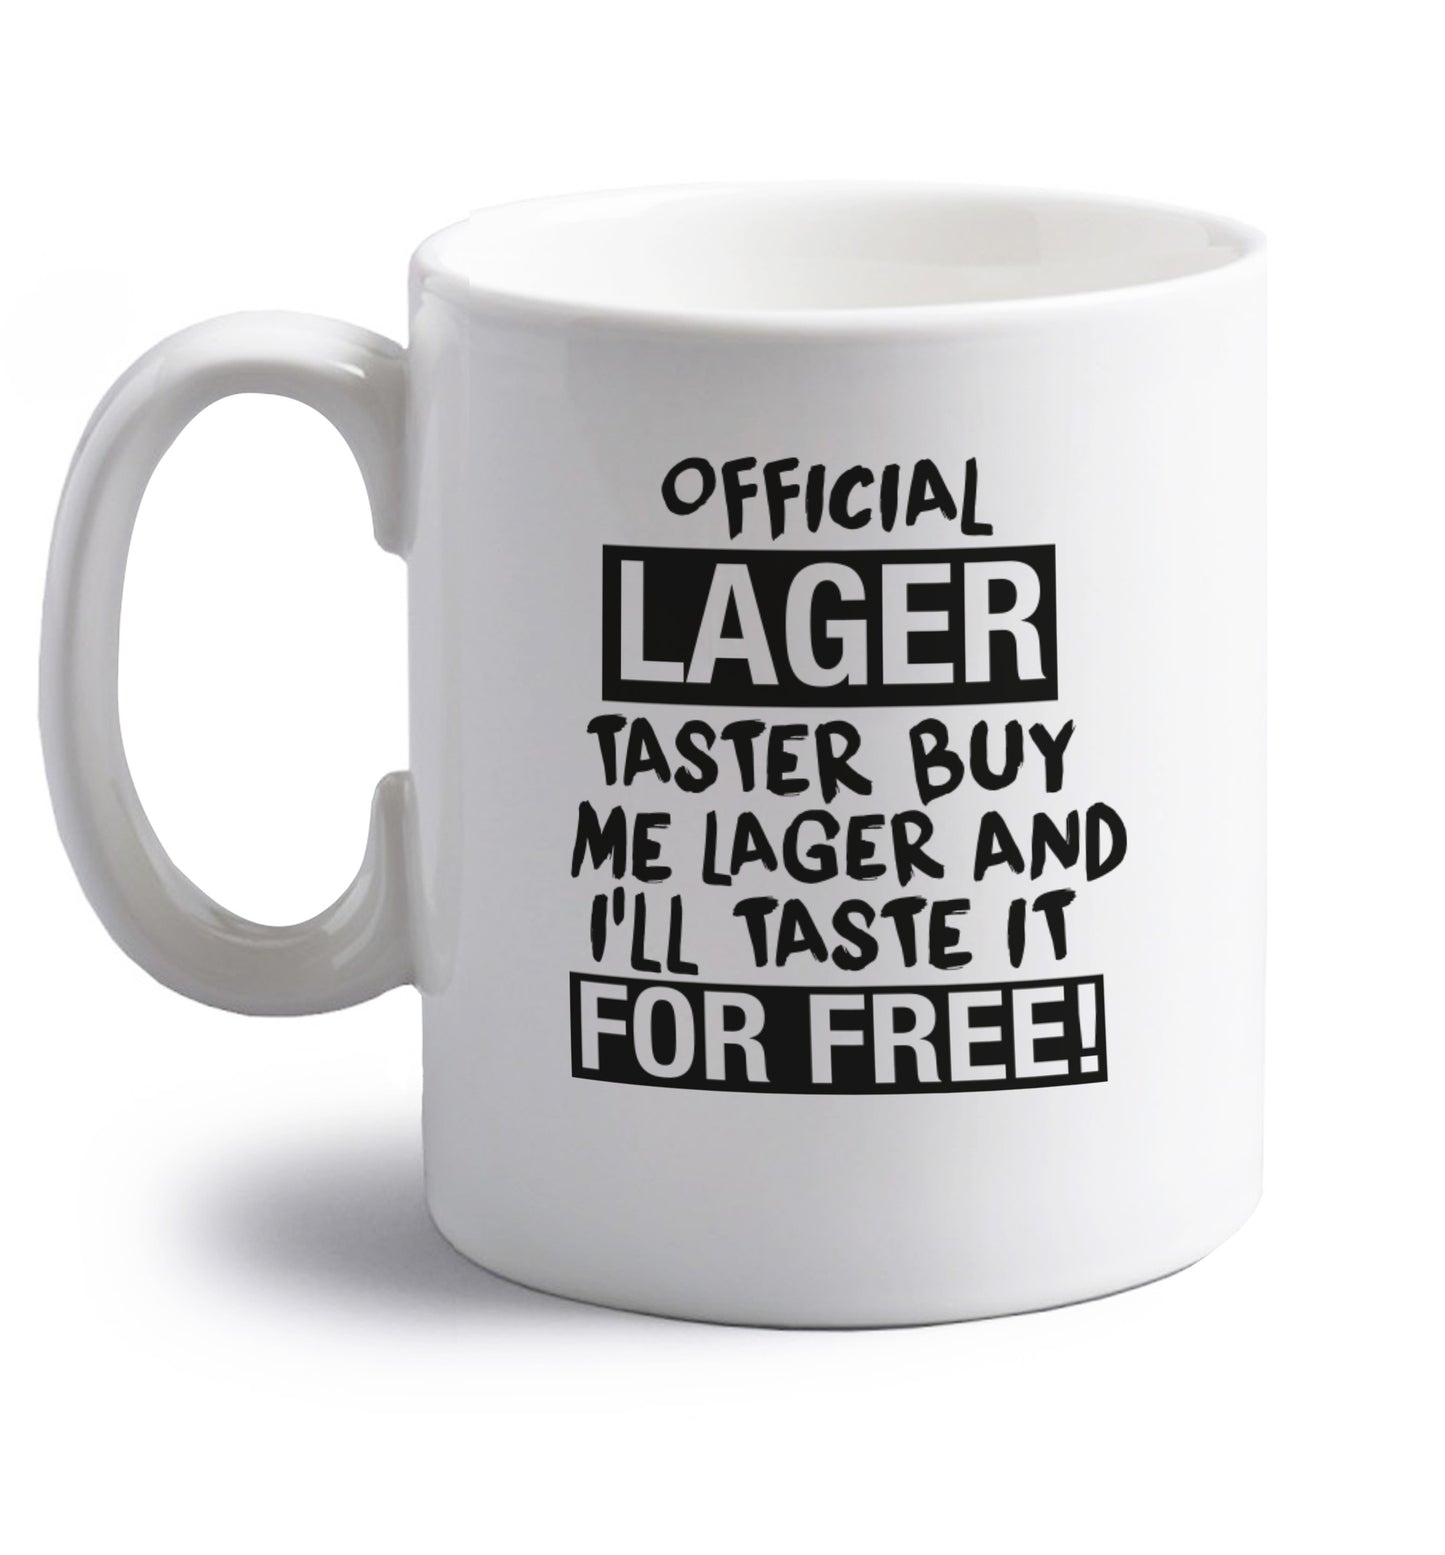 Official lager taster buy me lager and I'll taste it for free! right handed white ceramic mug 